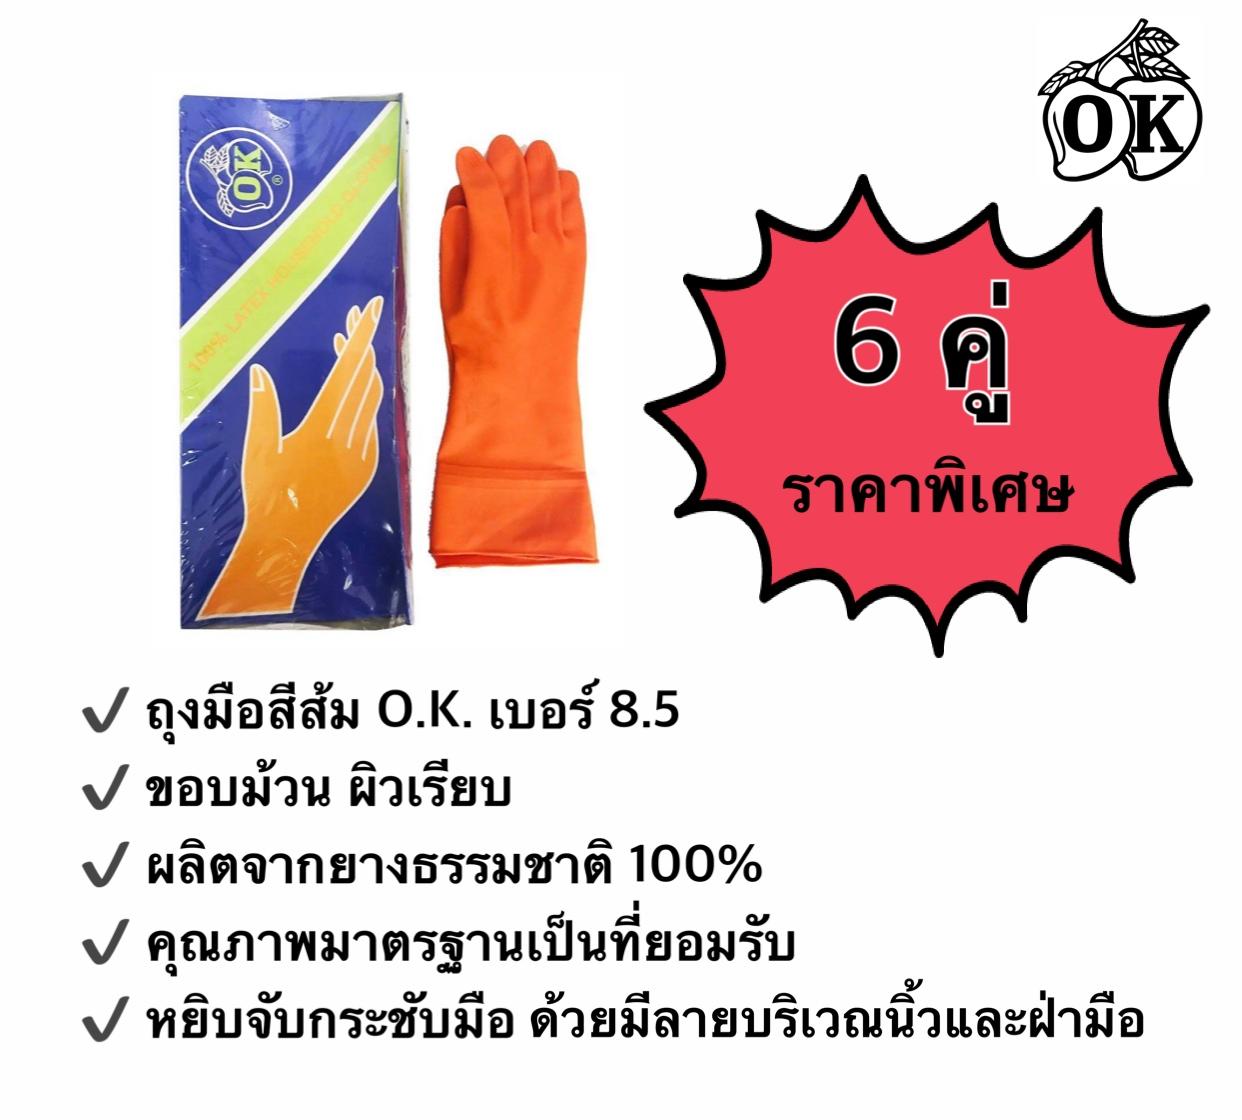 ถุงมือยางตรา โอ.เค. O.K. RUBBER GLOVES ถุงมือแม่บ้านสีส้ม เบอร์ 8.5 HOUSEHOLD GLOVES ถุงมืออุตสาหกรรม ผลิตจากยางธรรมชาติ 100% (6 คู่)